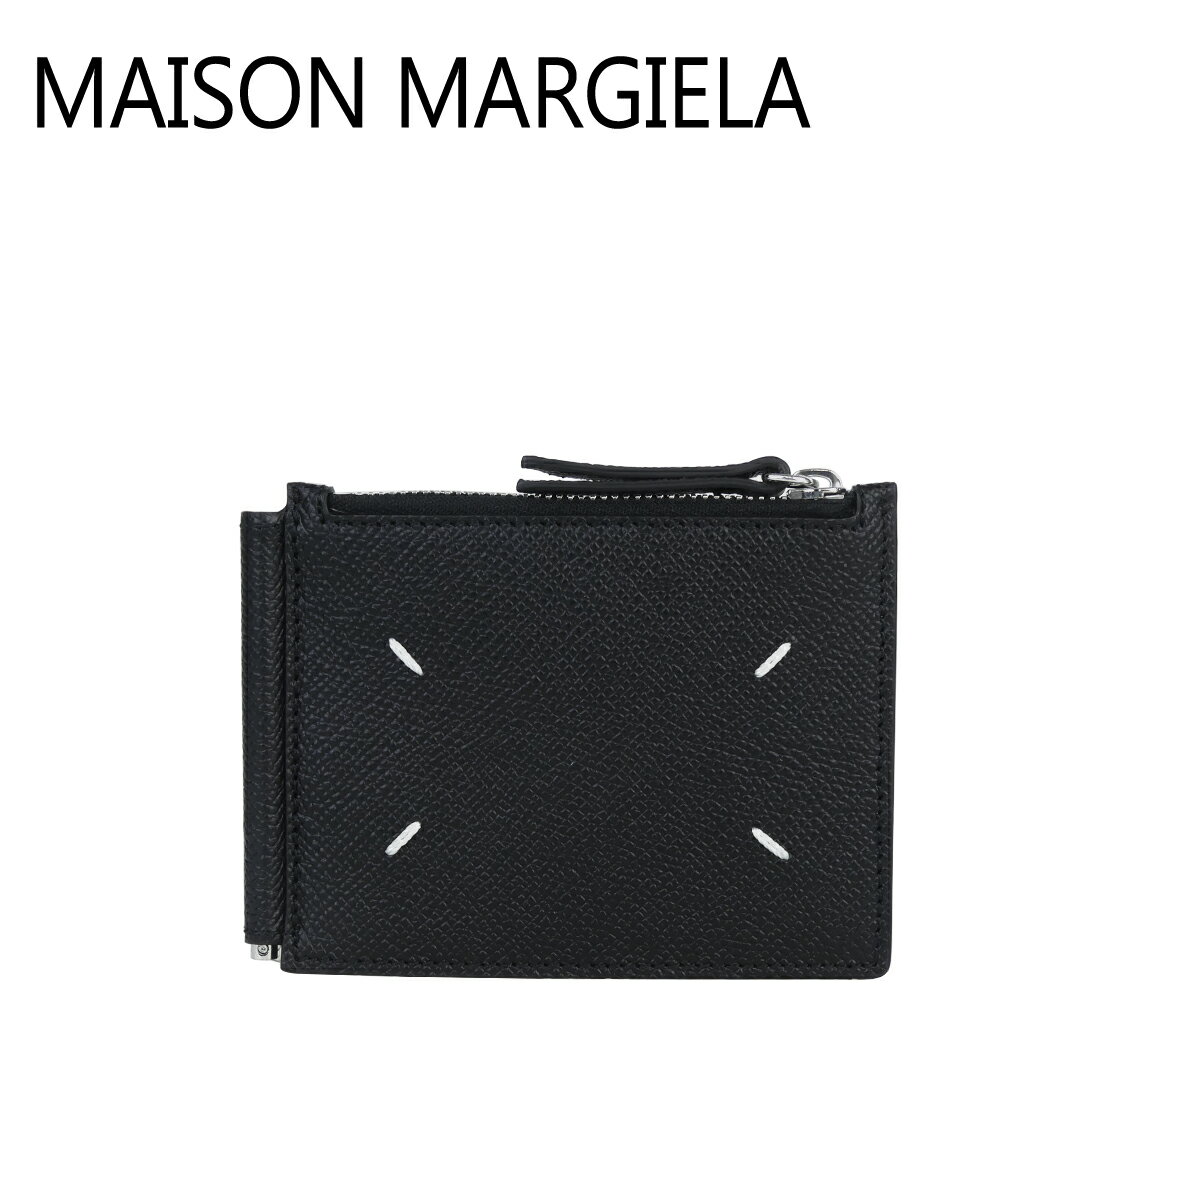 メゾン マルジェラ 財布 メンズ メゾンマルジェラ Maison Margiela 二つ折り財布 マネークリップ付き 小銭入れ付き SA1UI0018 P4745 T8013 BLACK ギフト・のし可